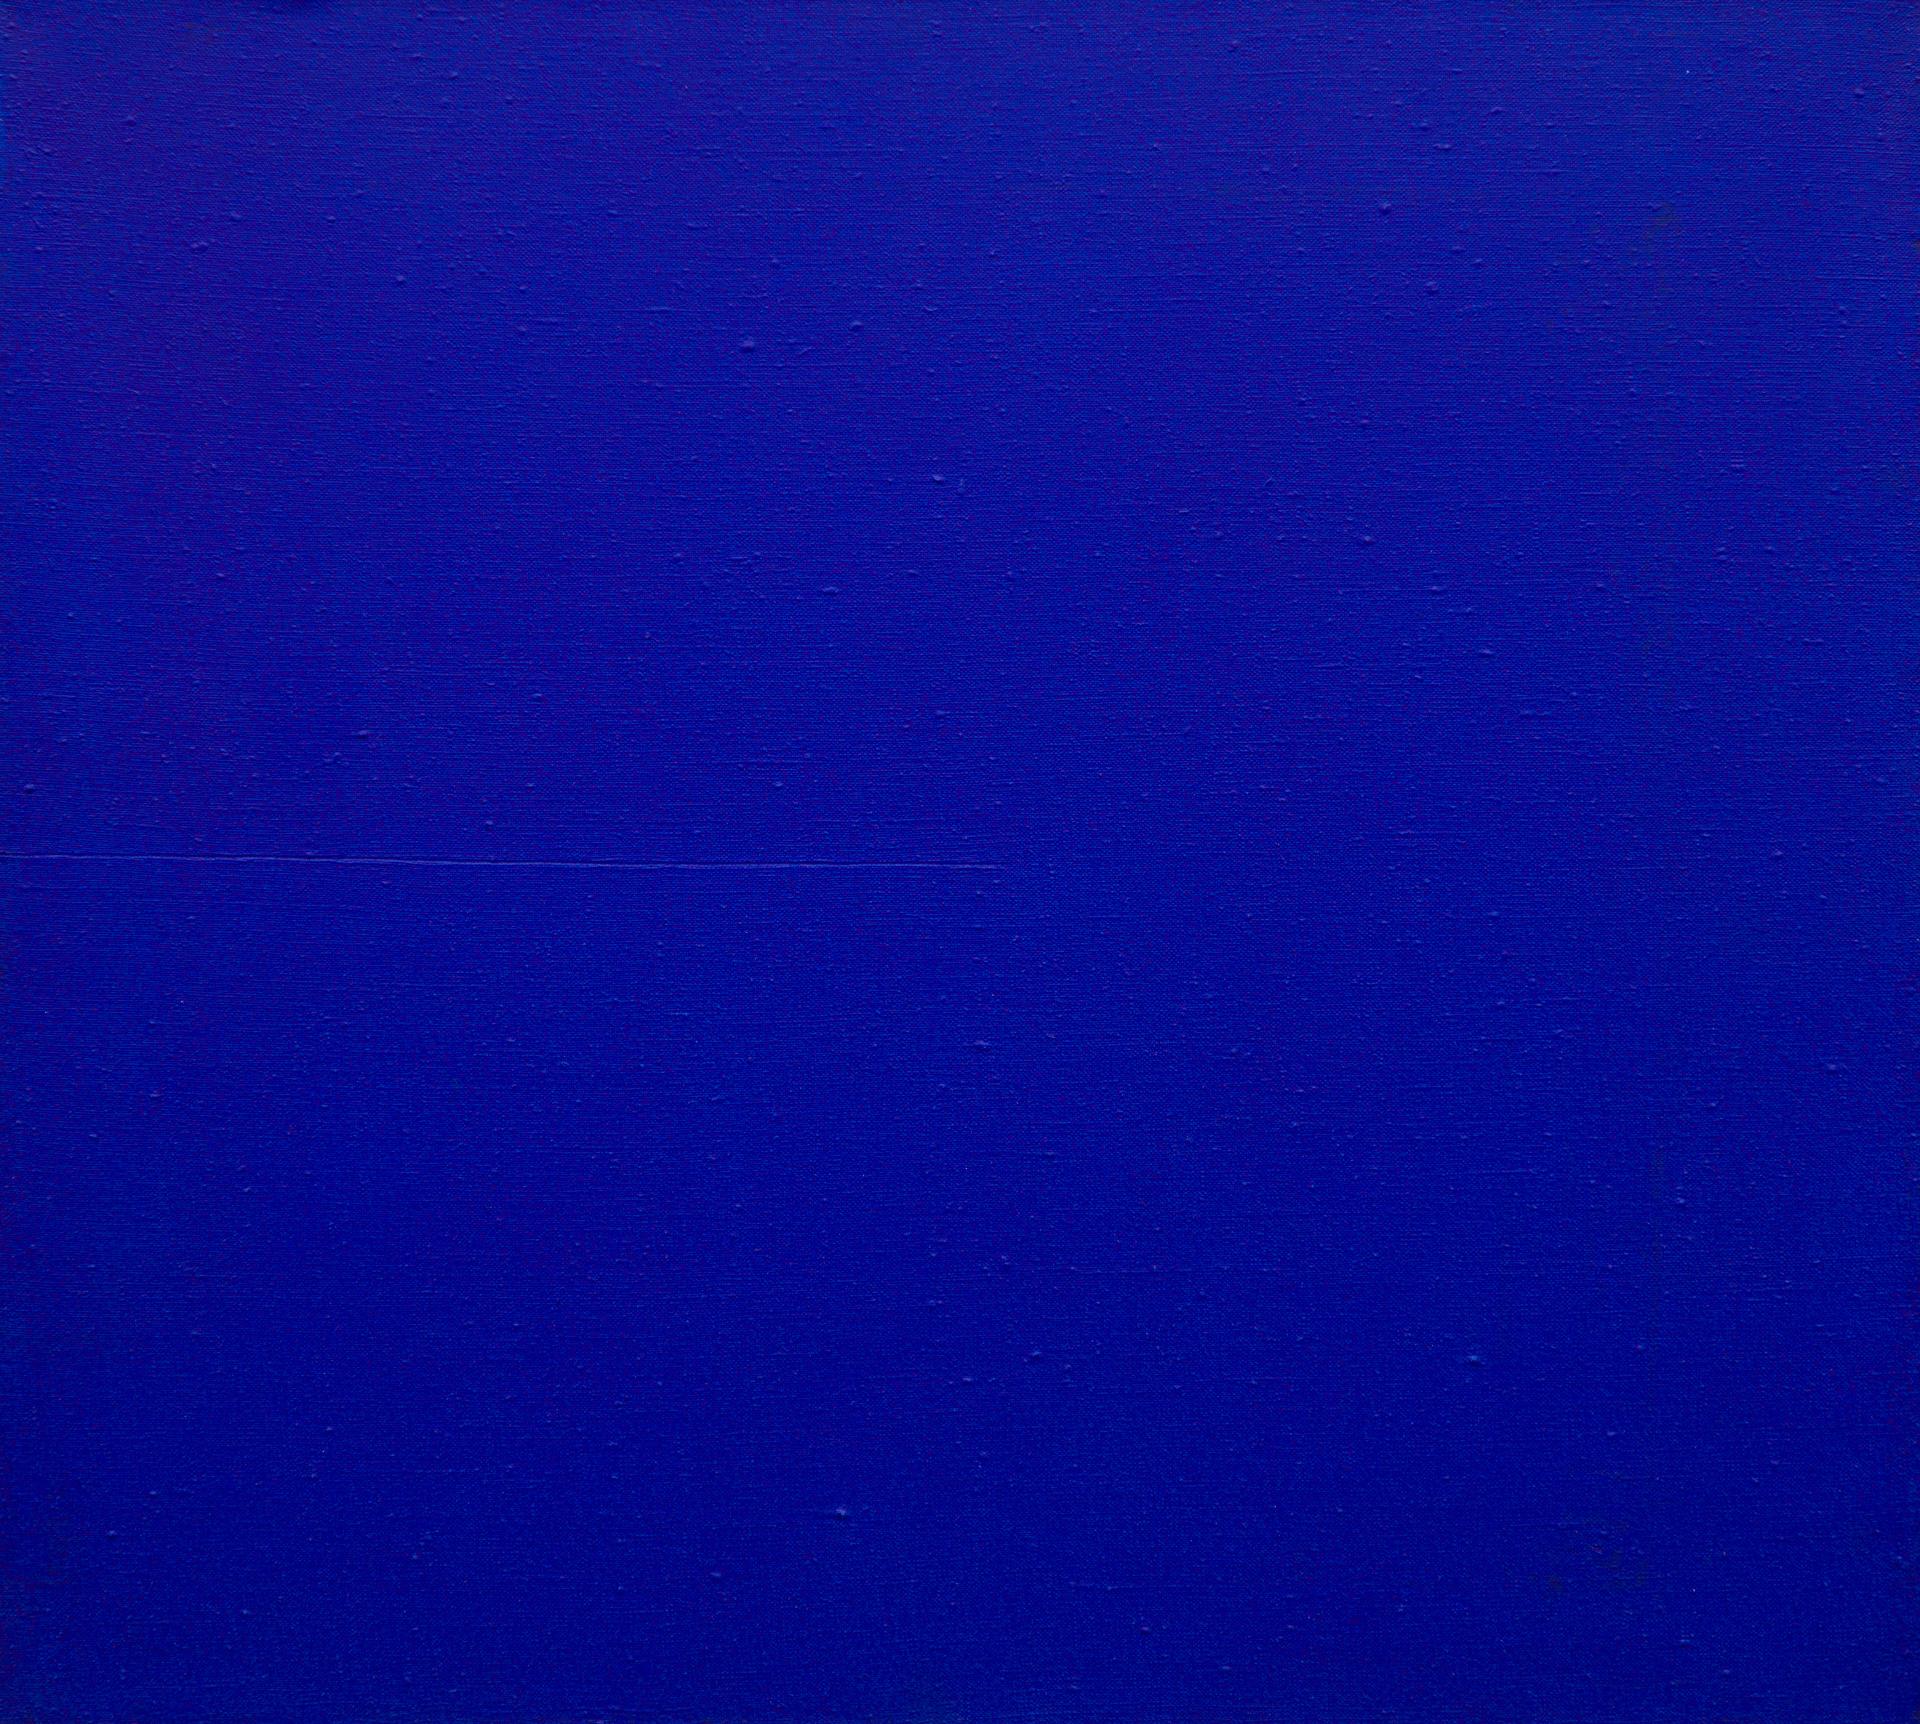 Claude Tousignant (1932) - Monochrome bleu, 1962